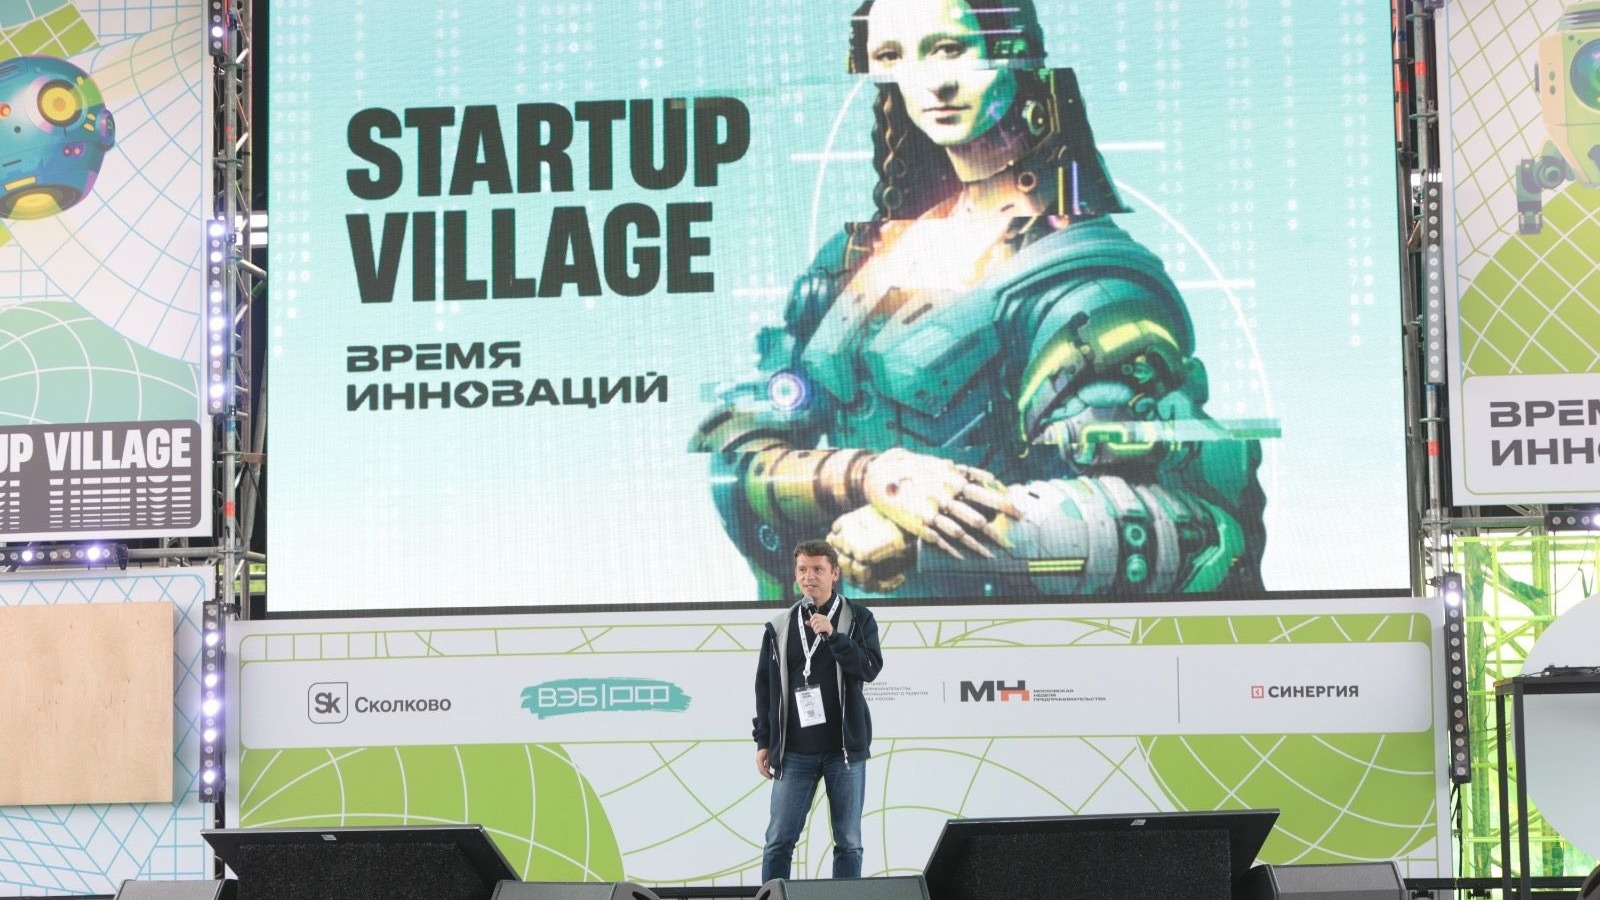 Организаторы Startup Village подвели итоги работы технологической конференции